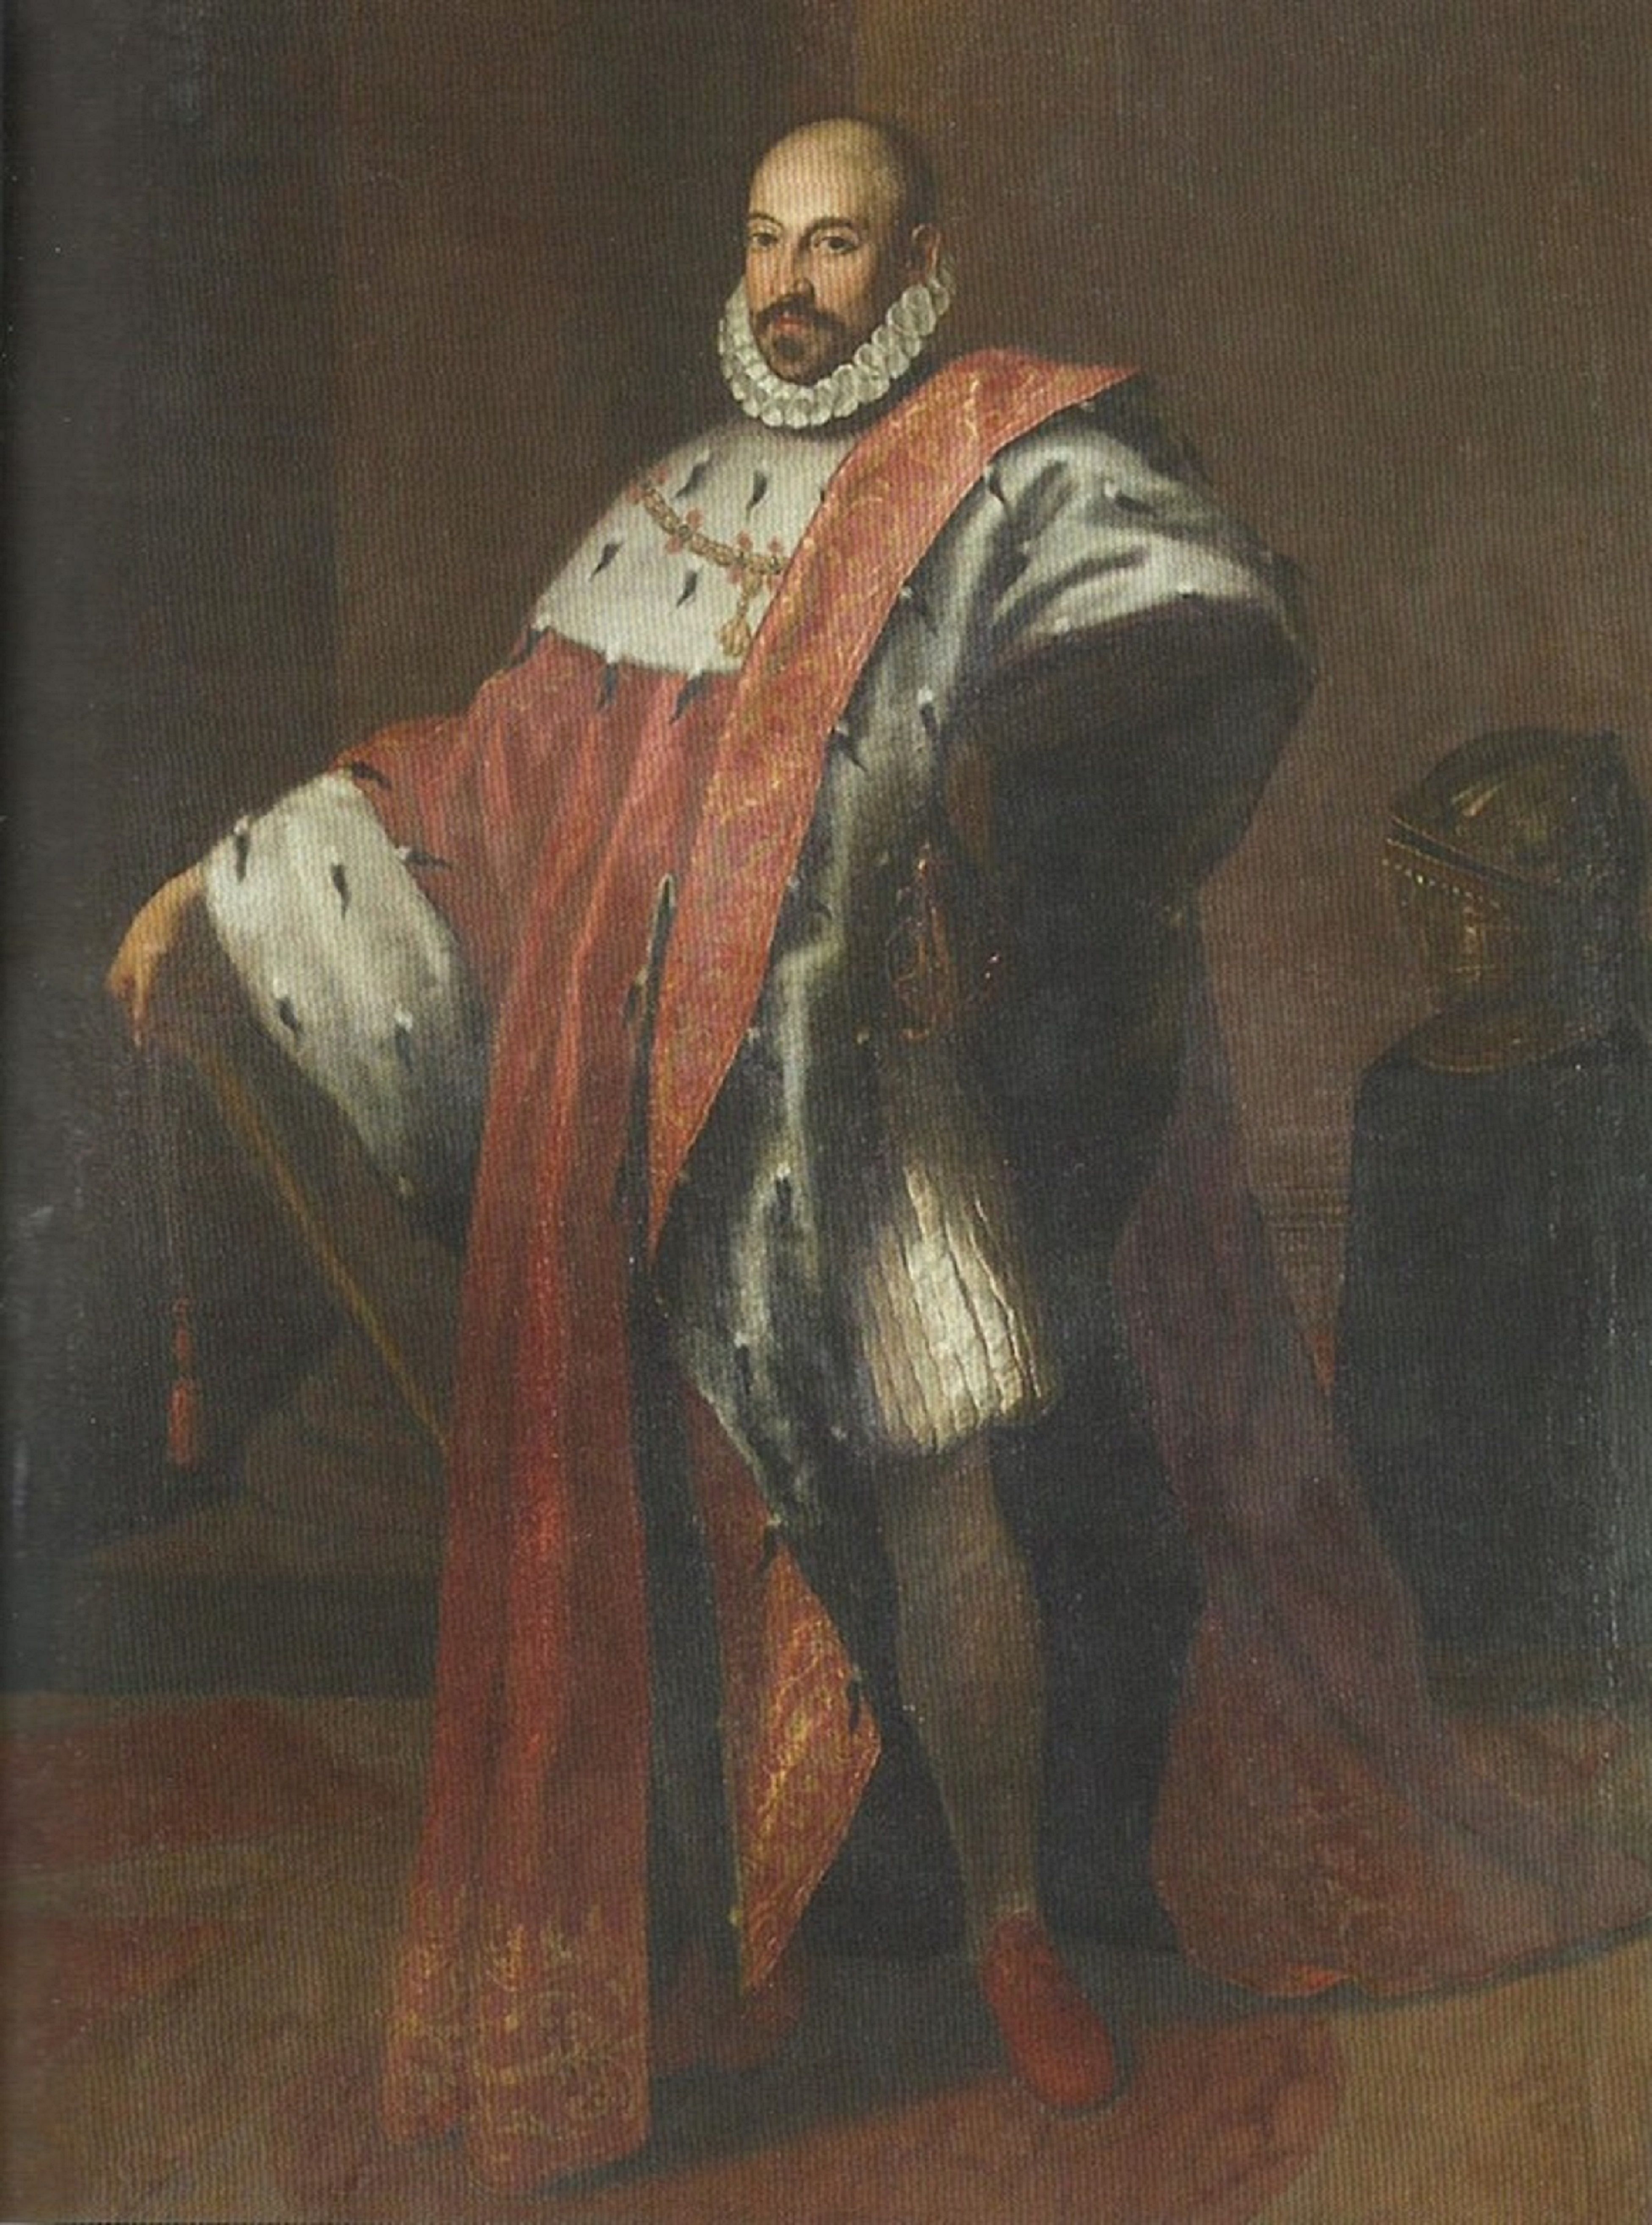 Il vicerè Marcantonio Colonna
(Justus Sustermans, Public domain, via Wikimedia Commons)